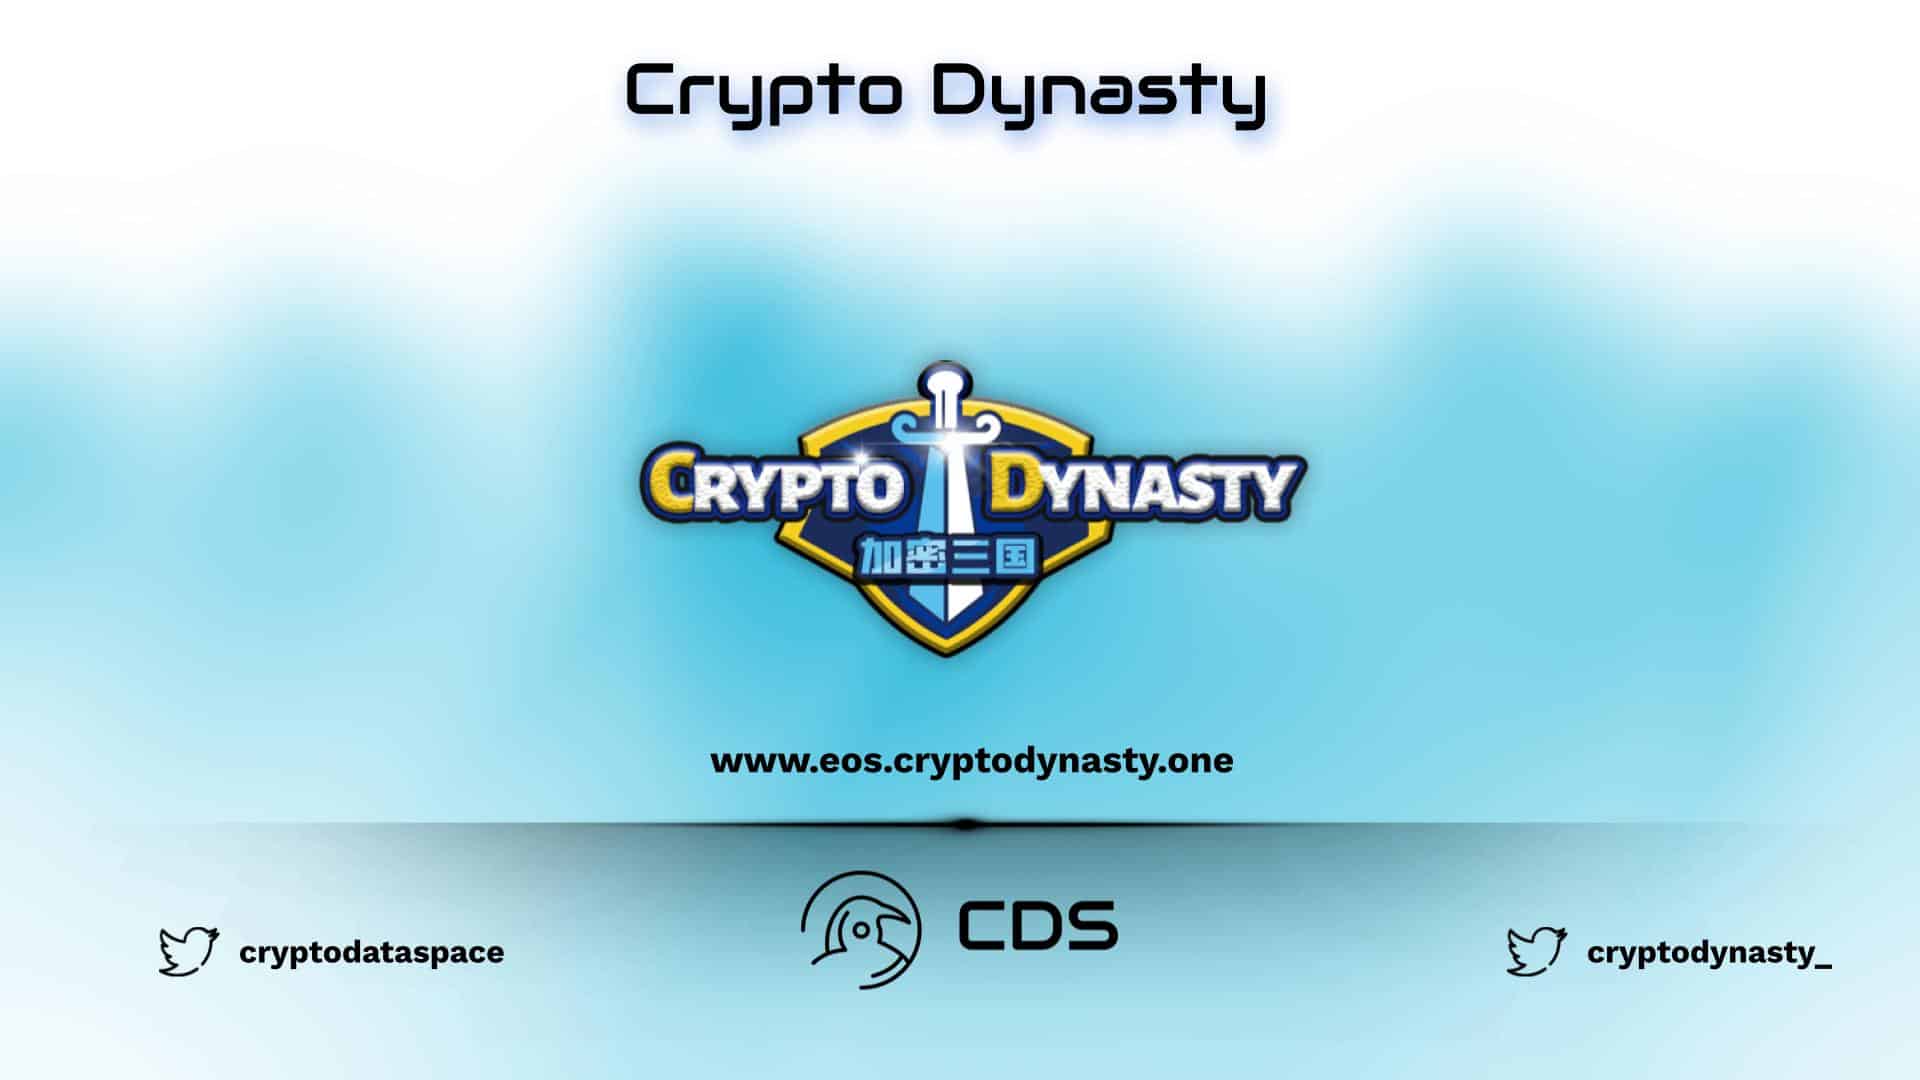 Crypto Dynasty